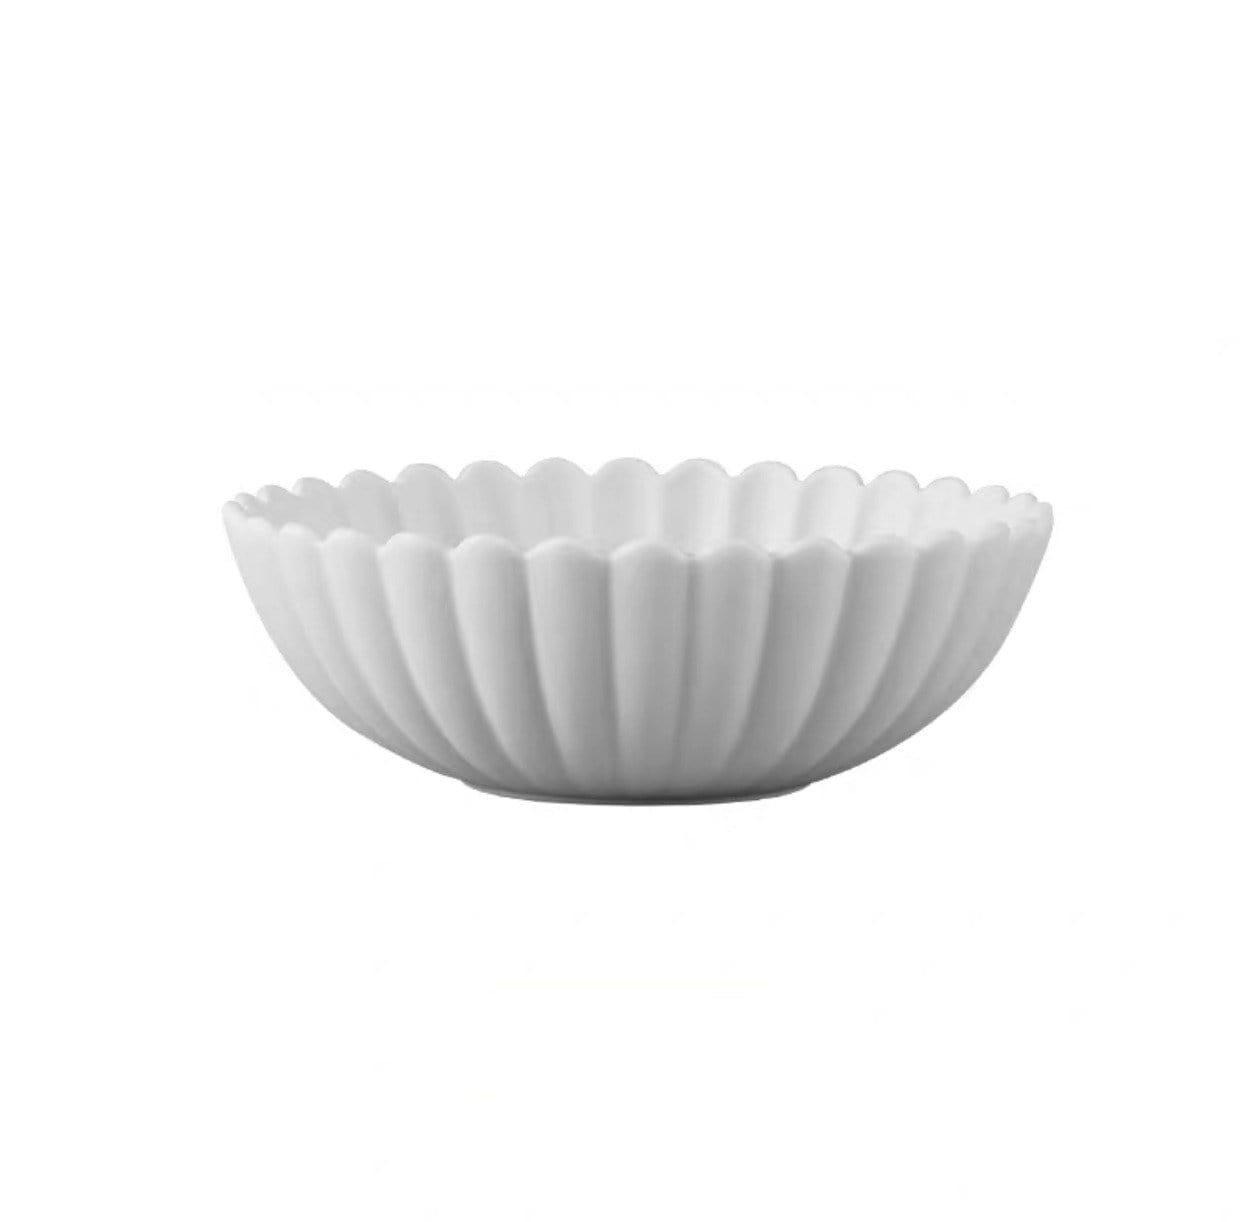 Helms Store Homewares Contemporary Ceramic Bowl